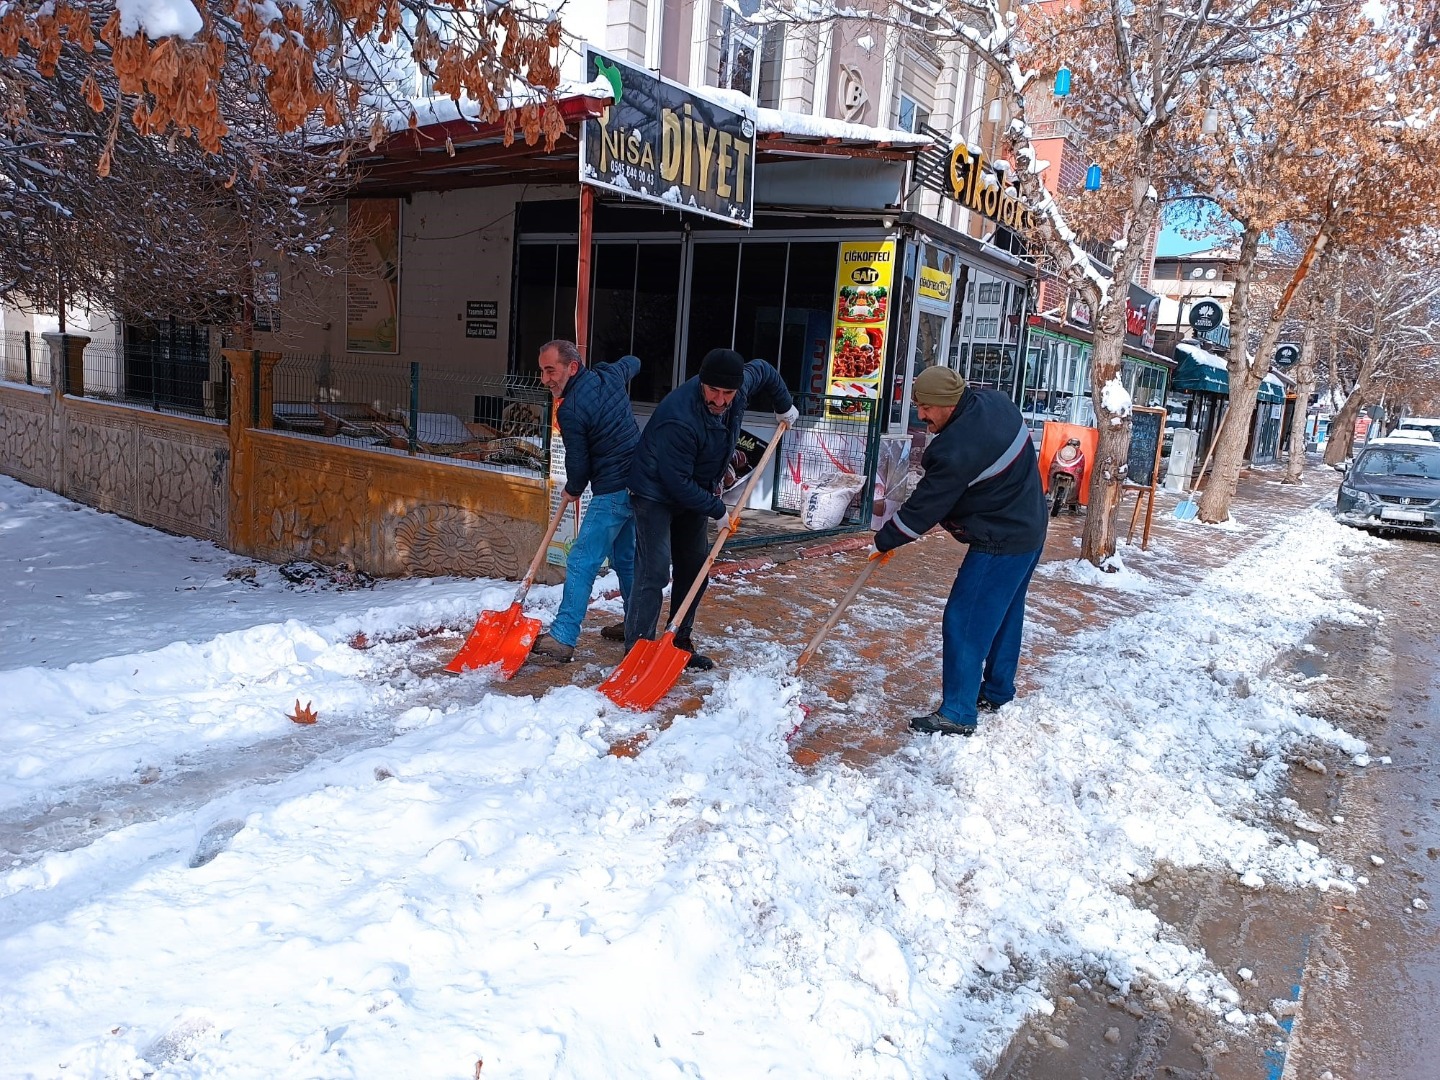 Kahramanmaraş'ta kar yağışı etkili oldu